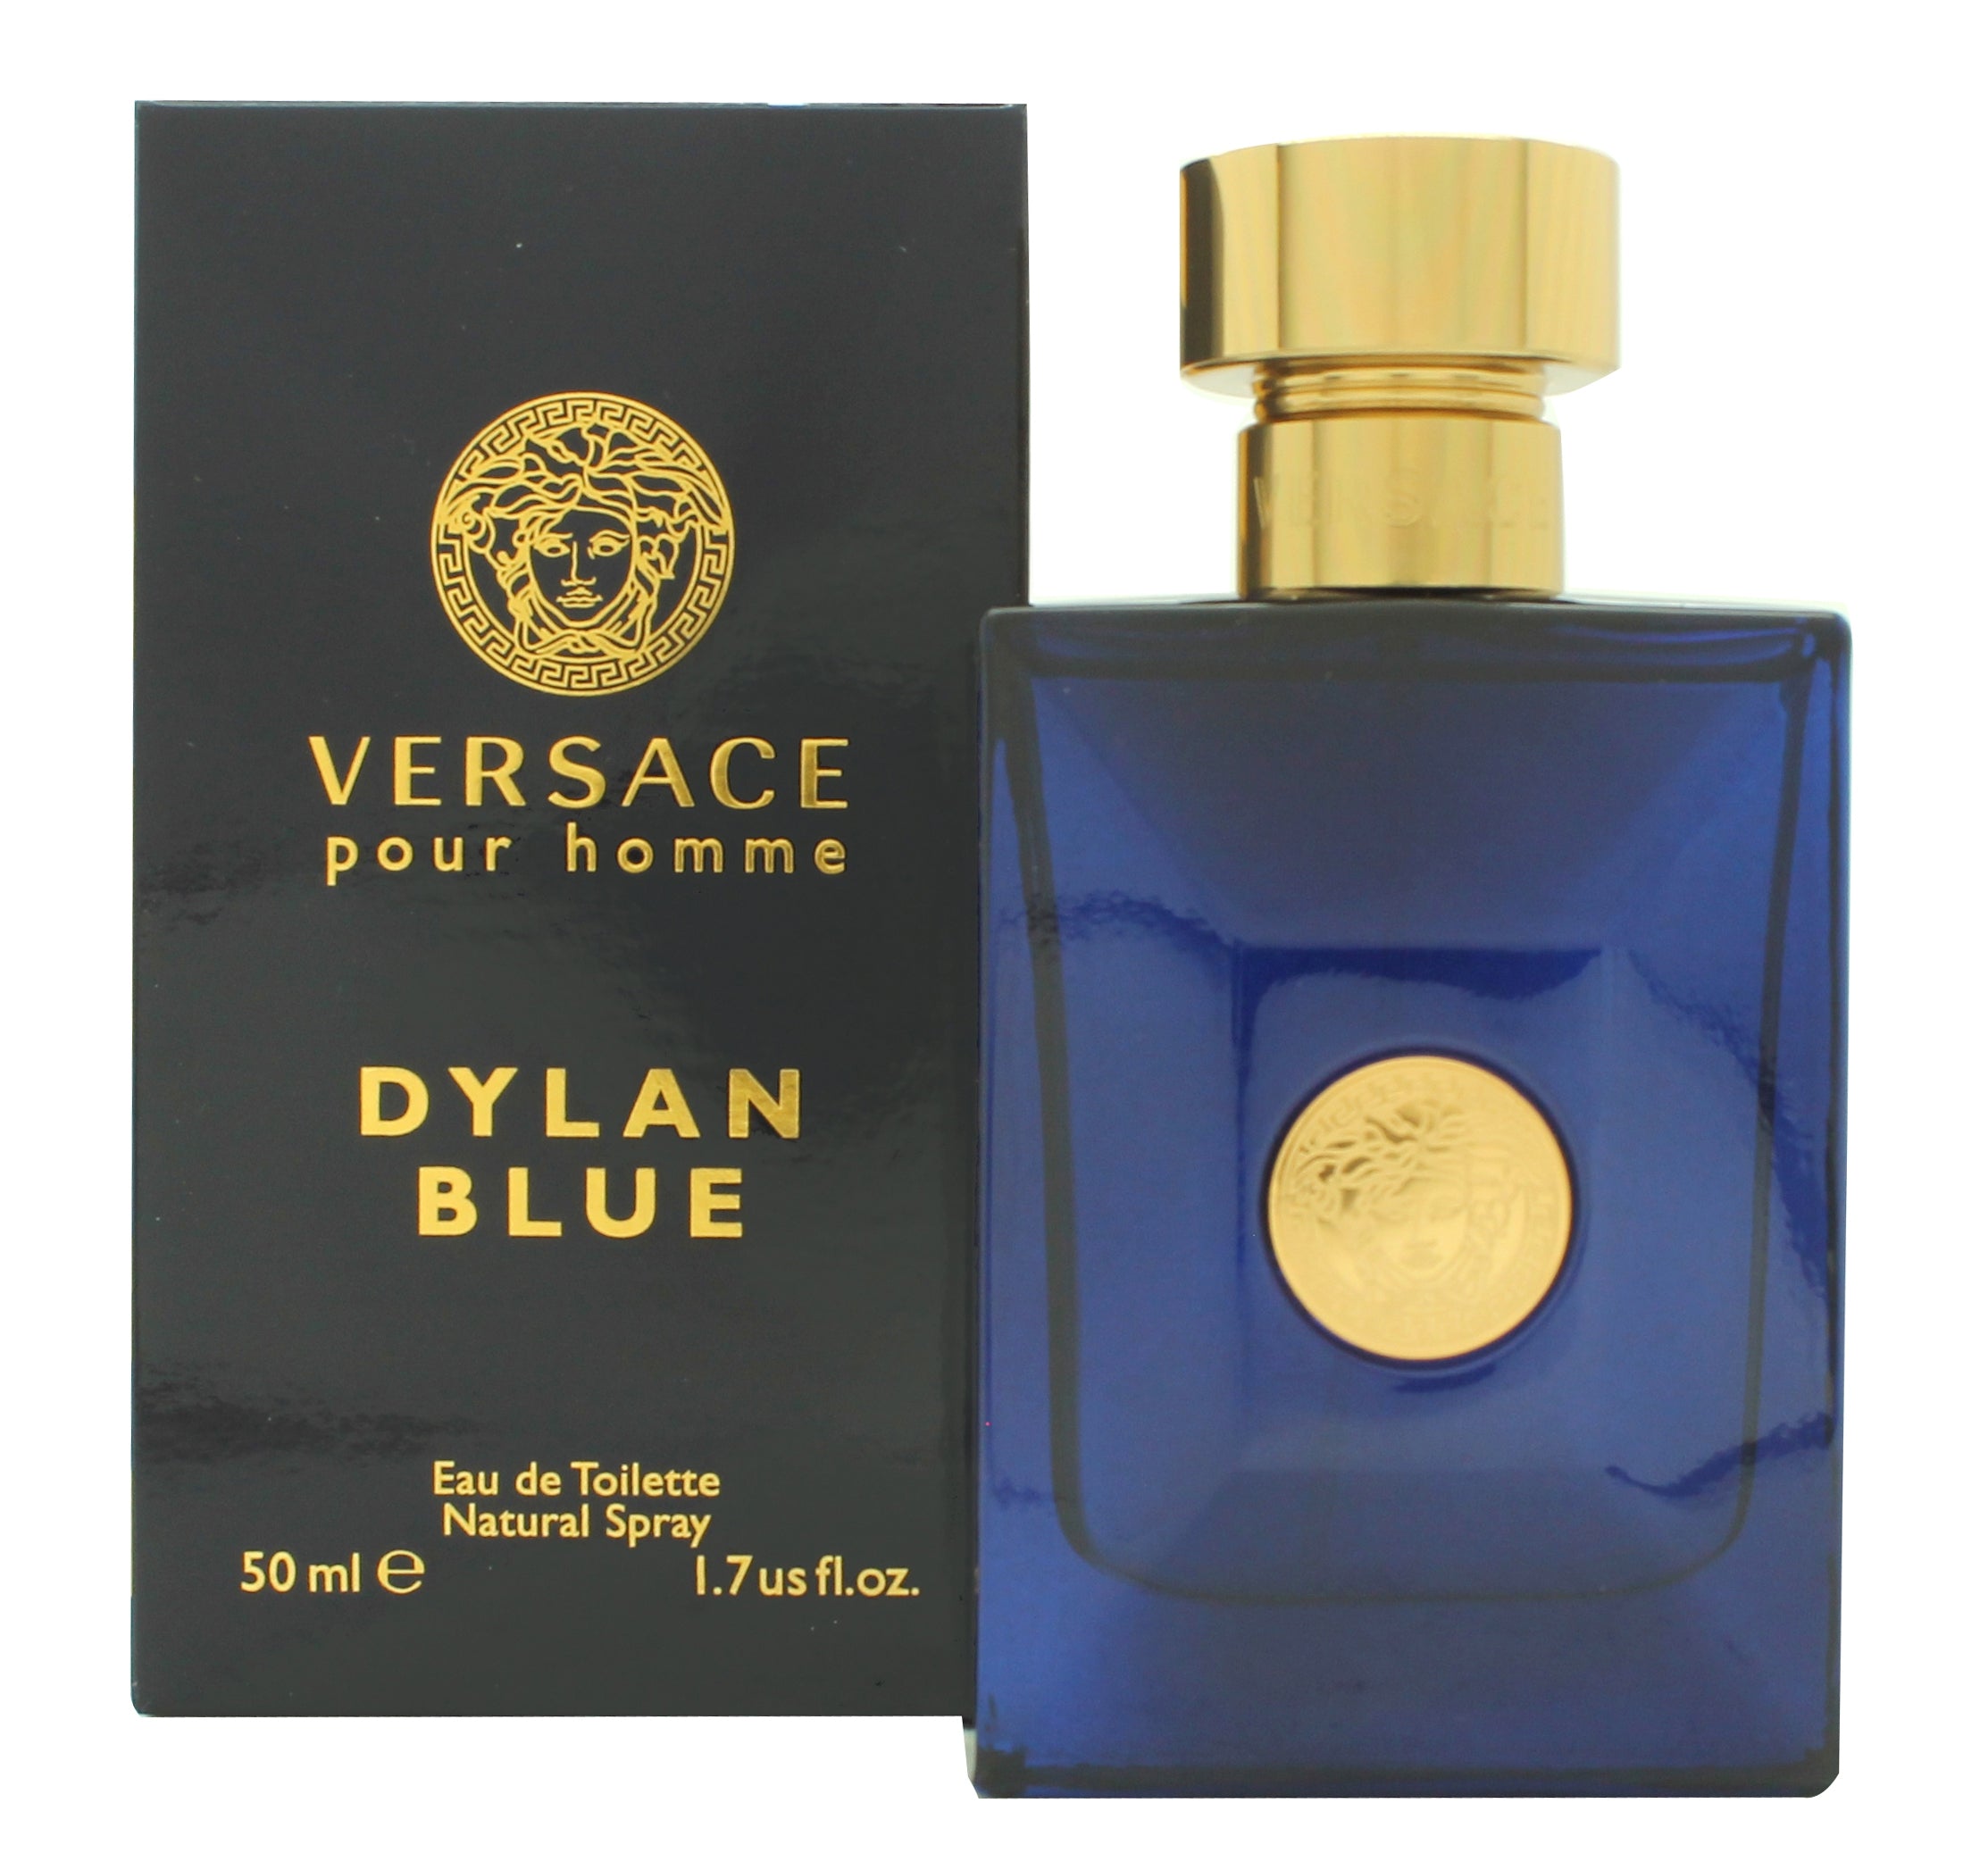 View Versace Pour Homme Dylan Blue Eau de Toilette 50ml Spray information